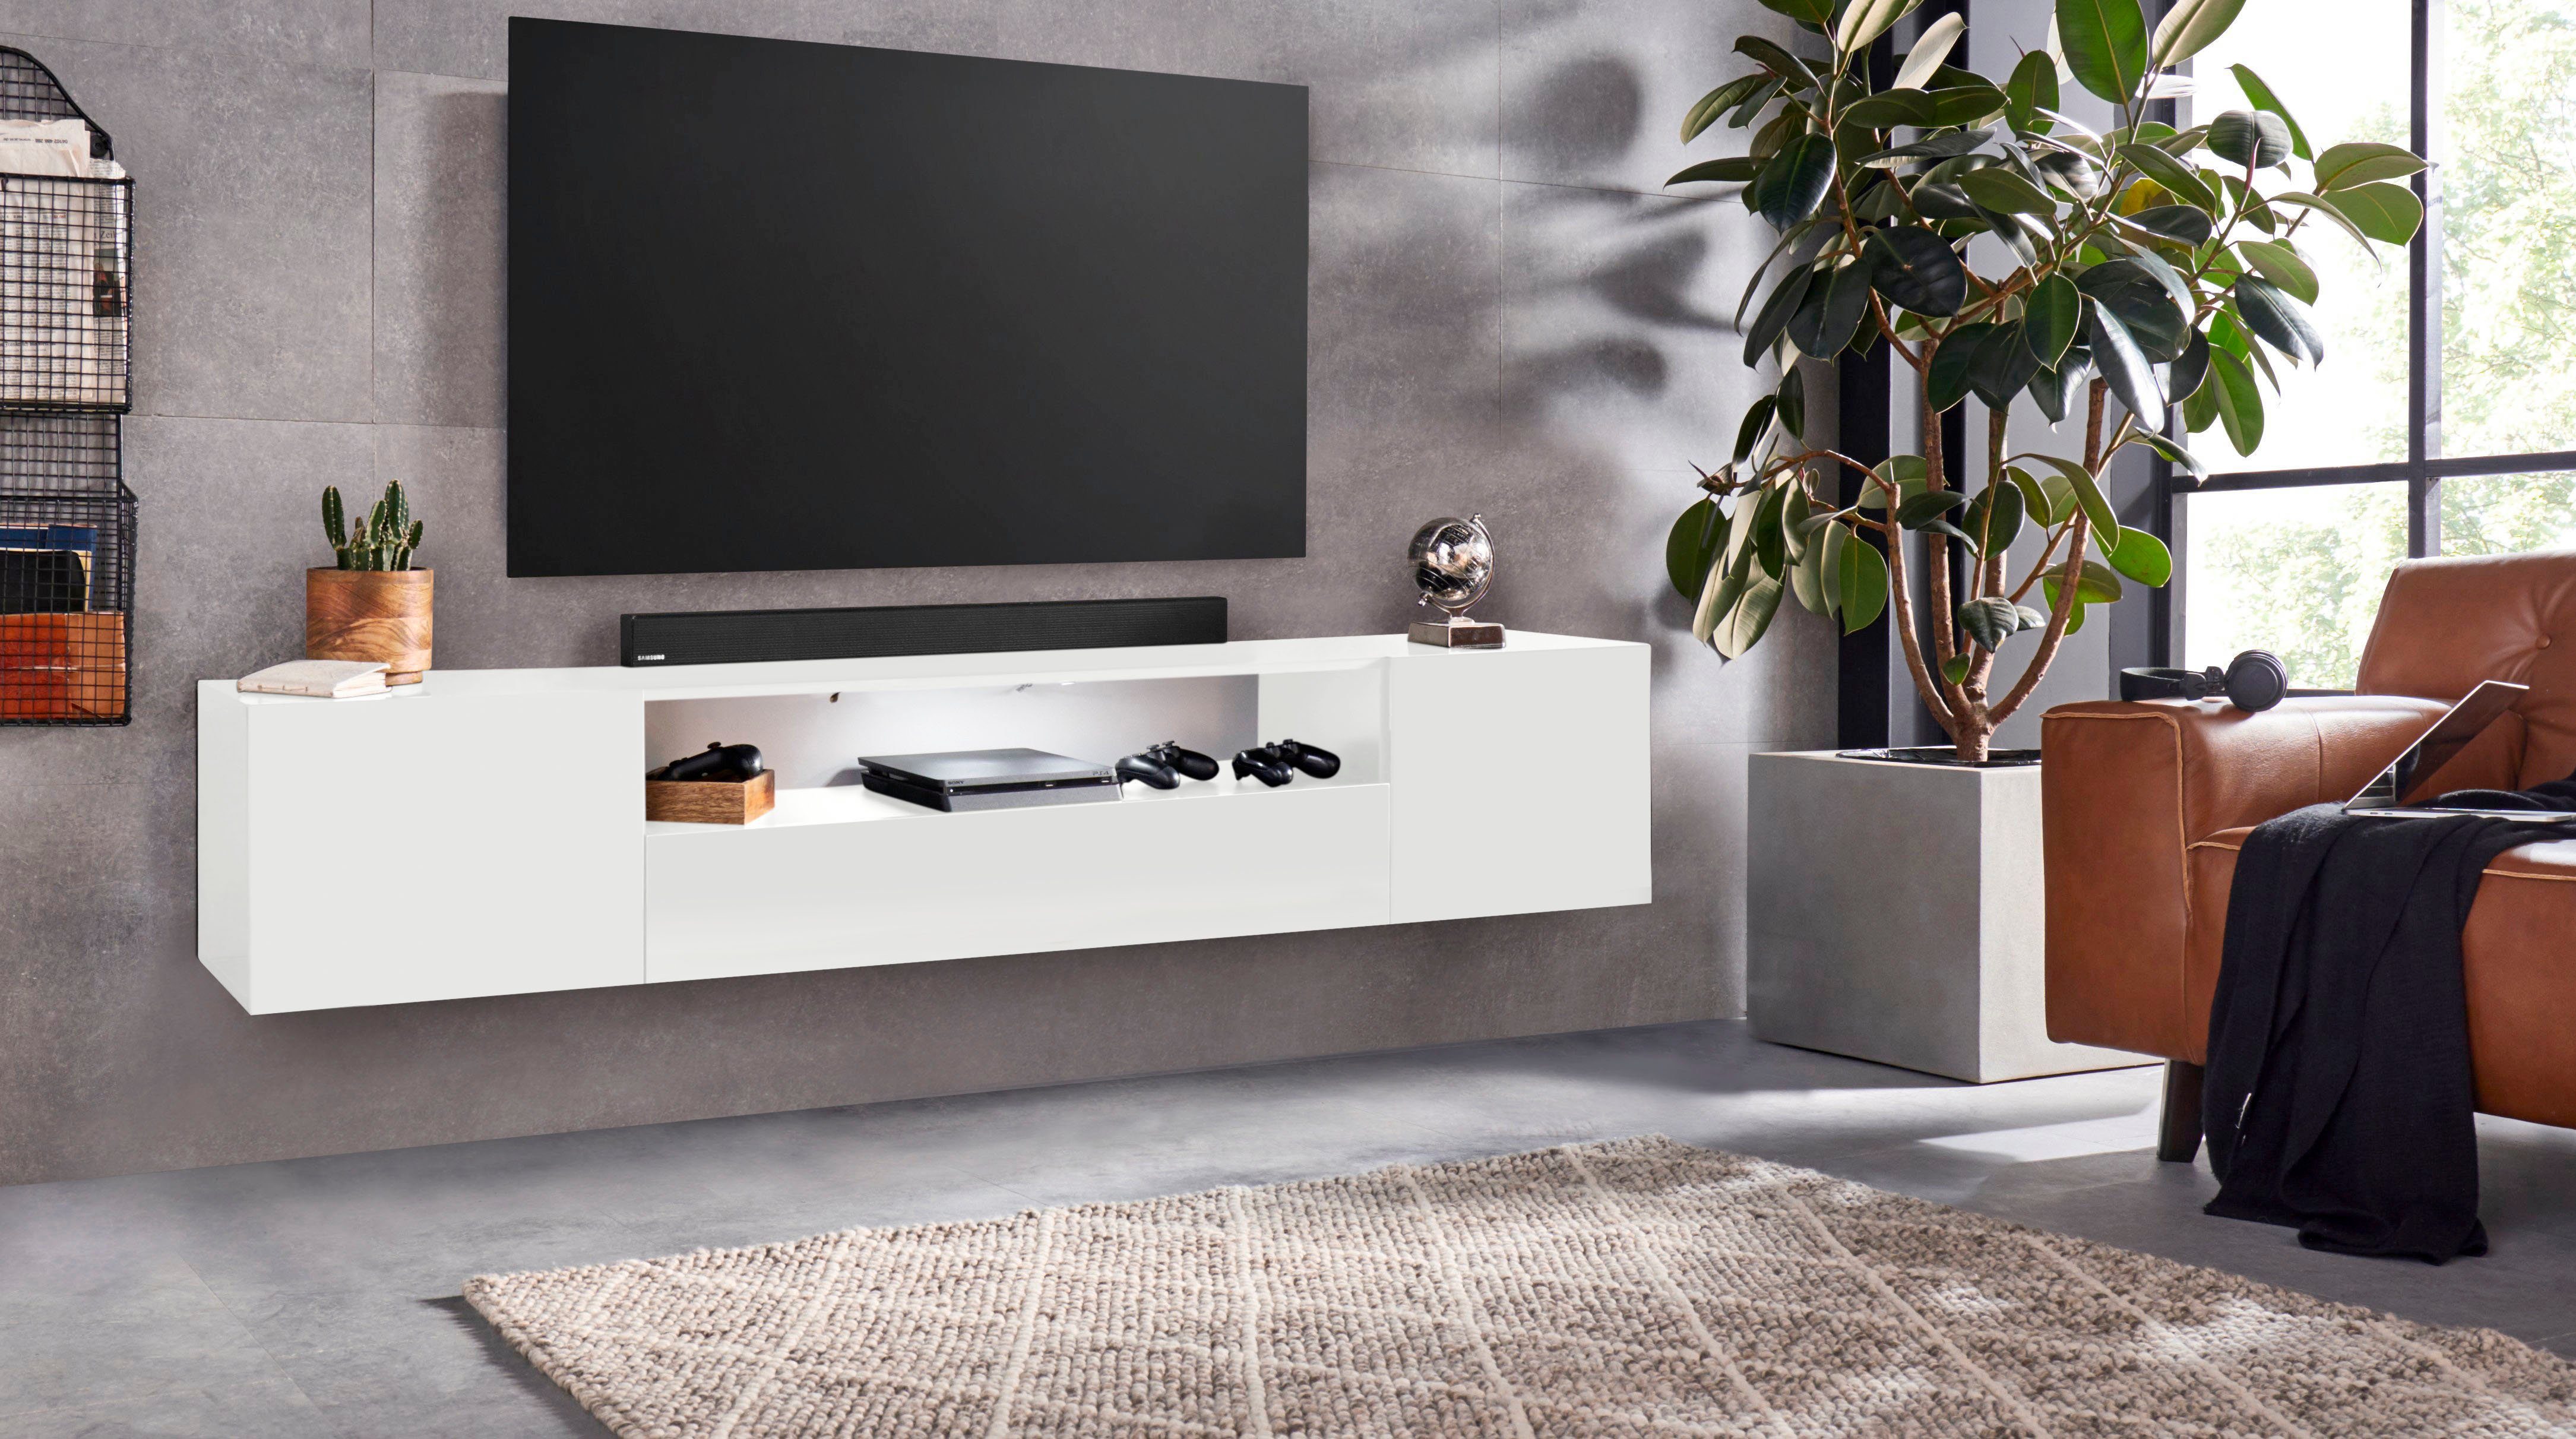 Bezit Tact Dubbelzinnig TV-meubel kopen? Vind het ideale meubel voor jouw woonkamer! | OTTO